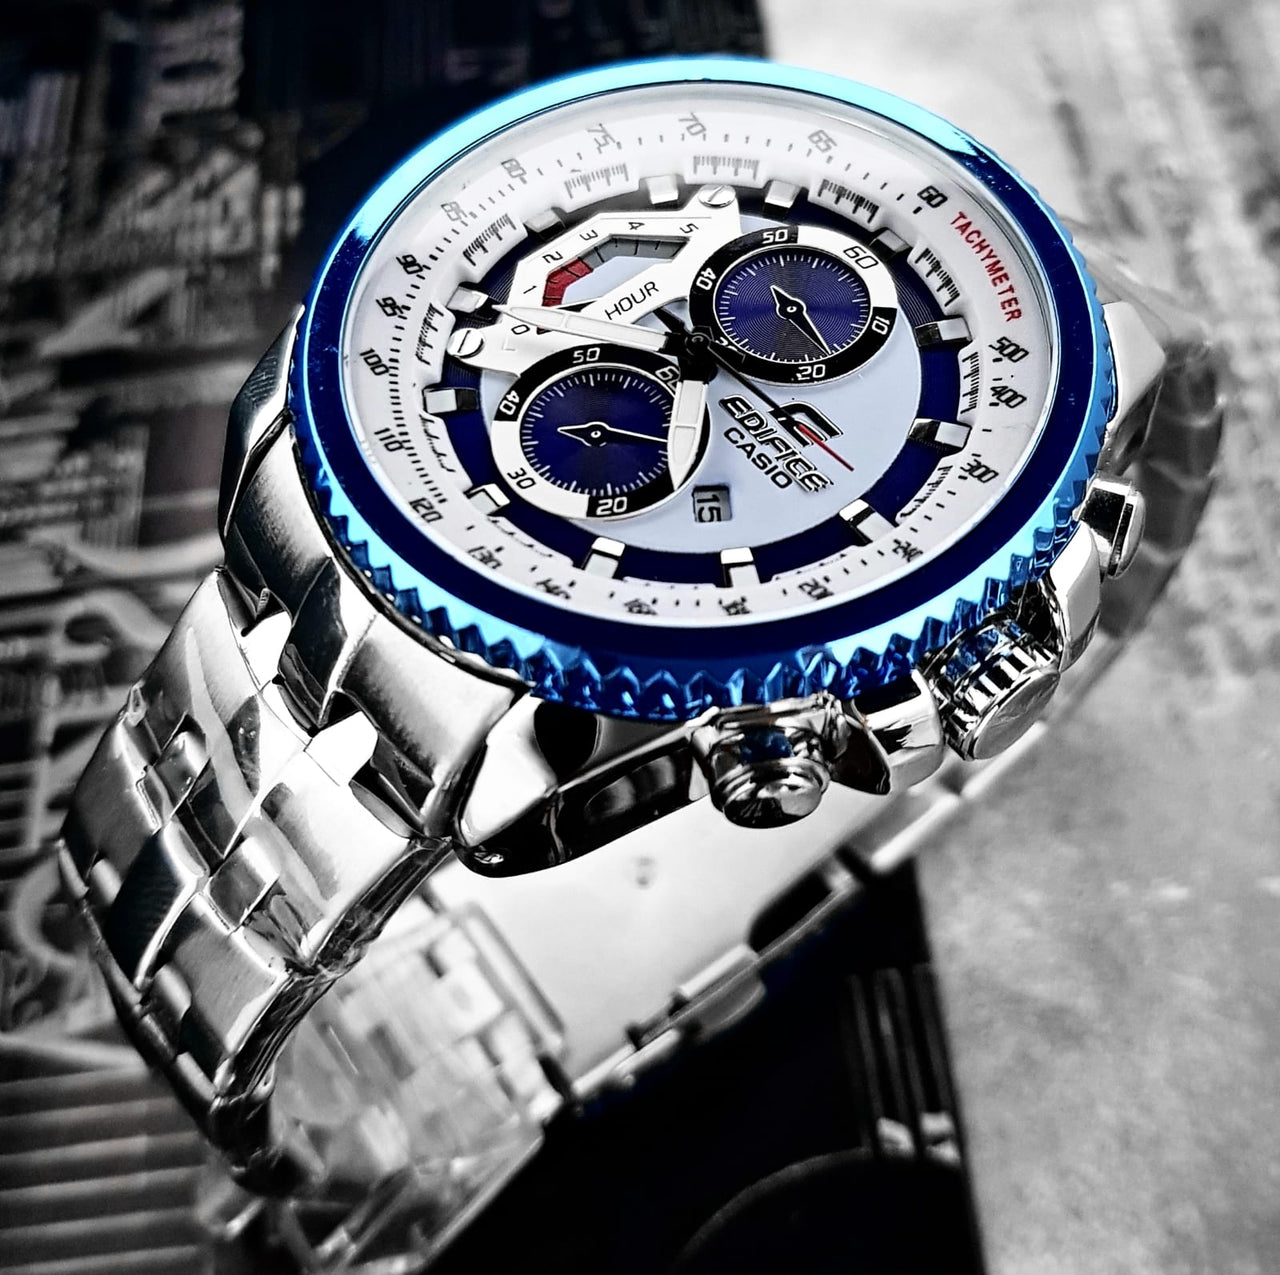 Casio - Reloj Analógico Hombre Edifice EF-558D-2AV - Plateado Y Azul